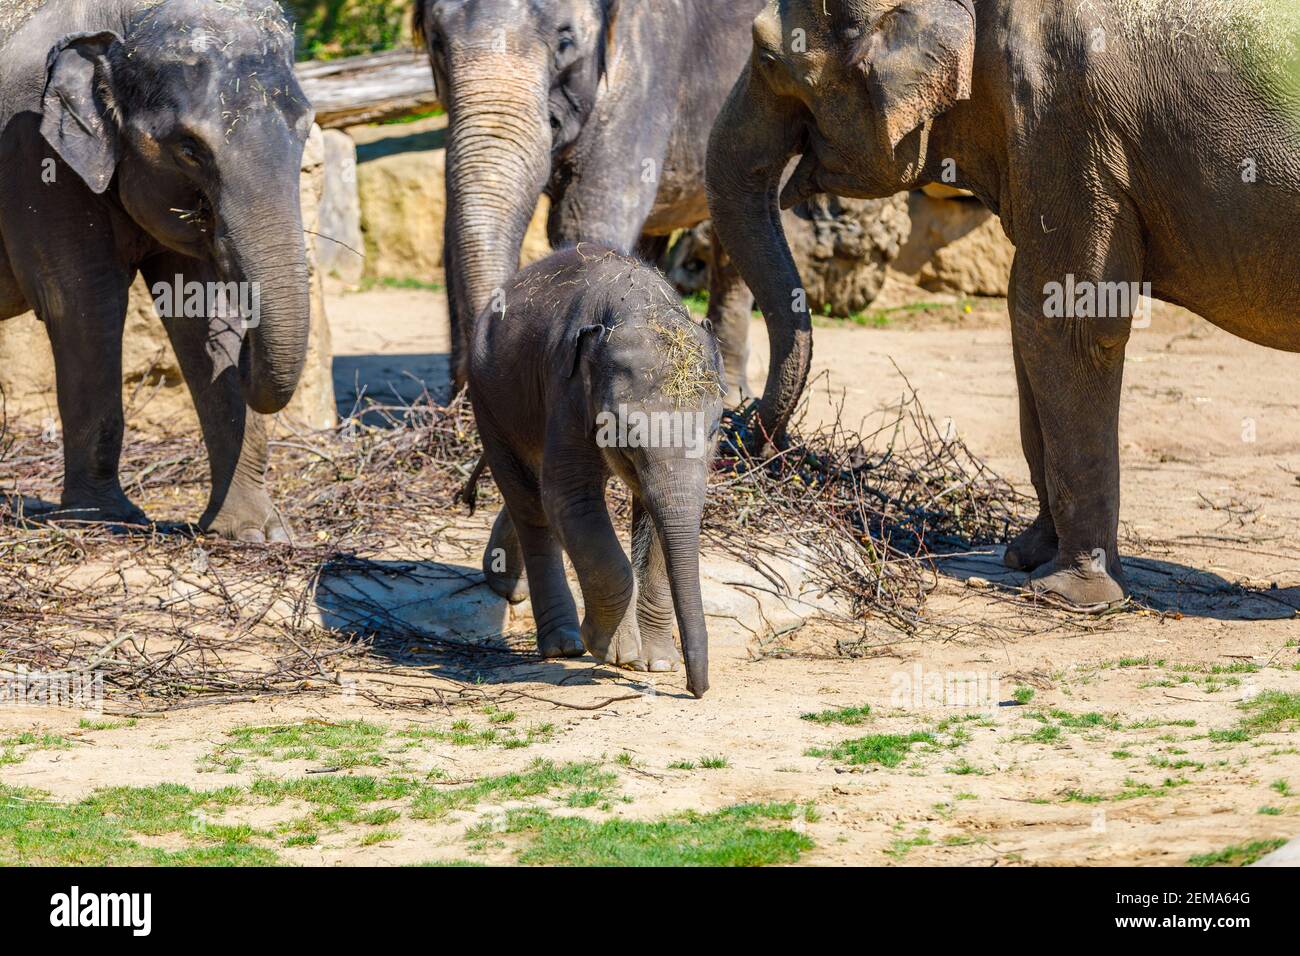 Una manada de elefantes en el zoológico se alimenta de ramas. El elefante bebé está tratando de escapar de ellos. Foto de stock